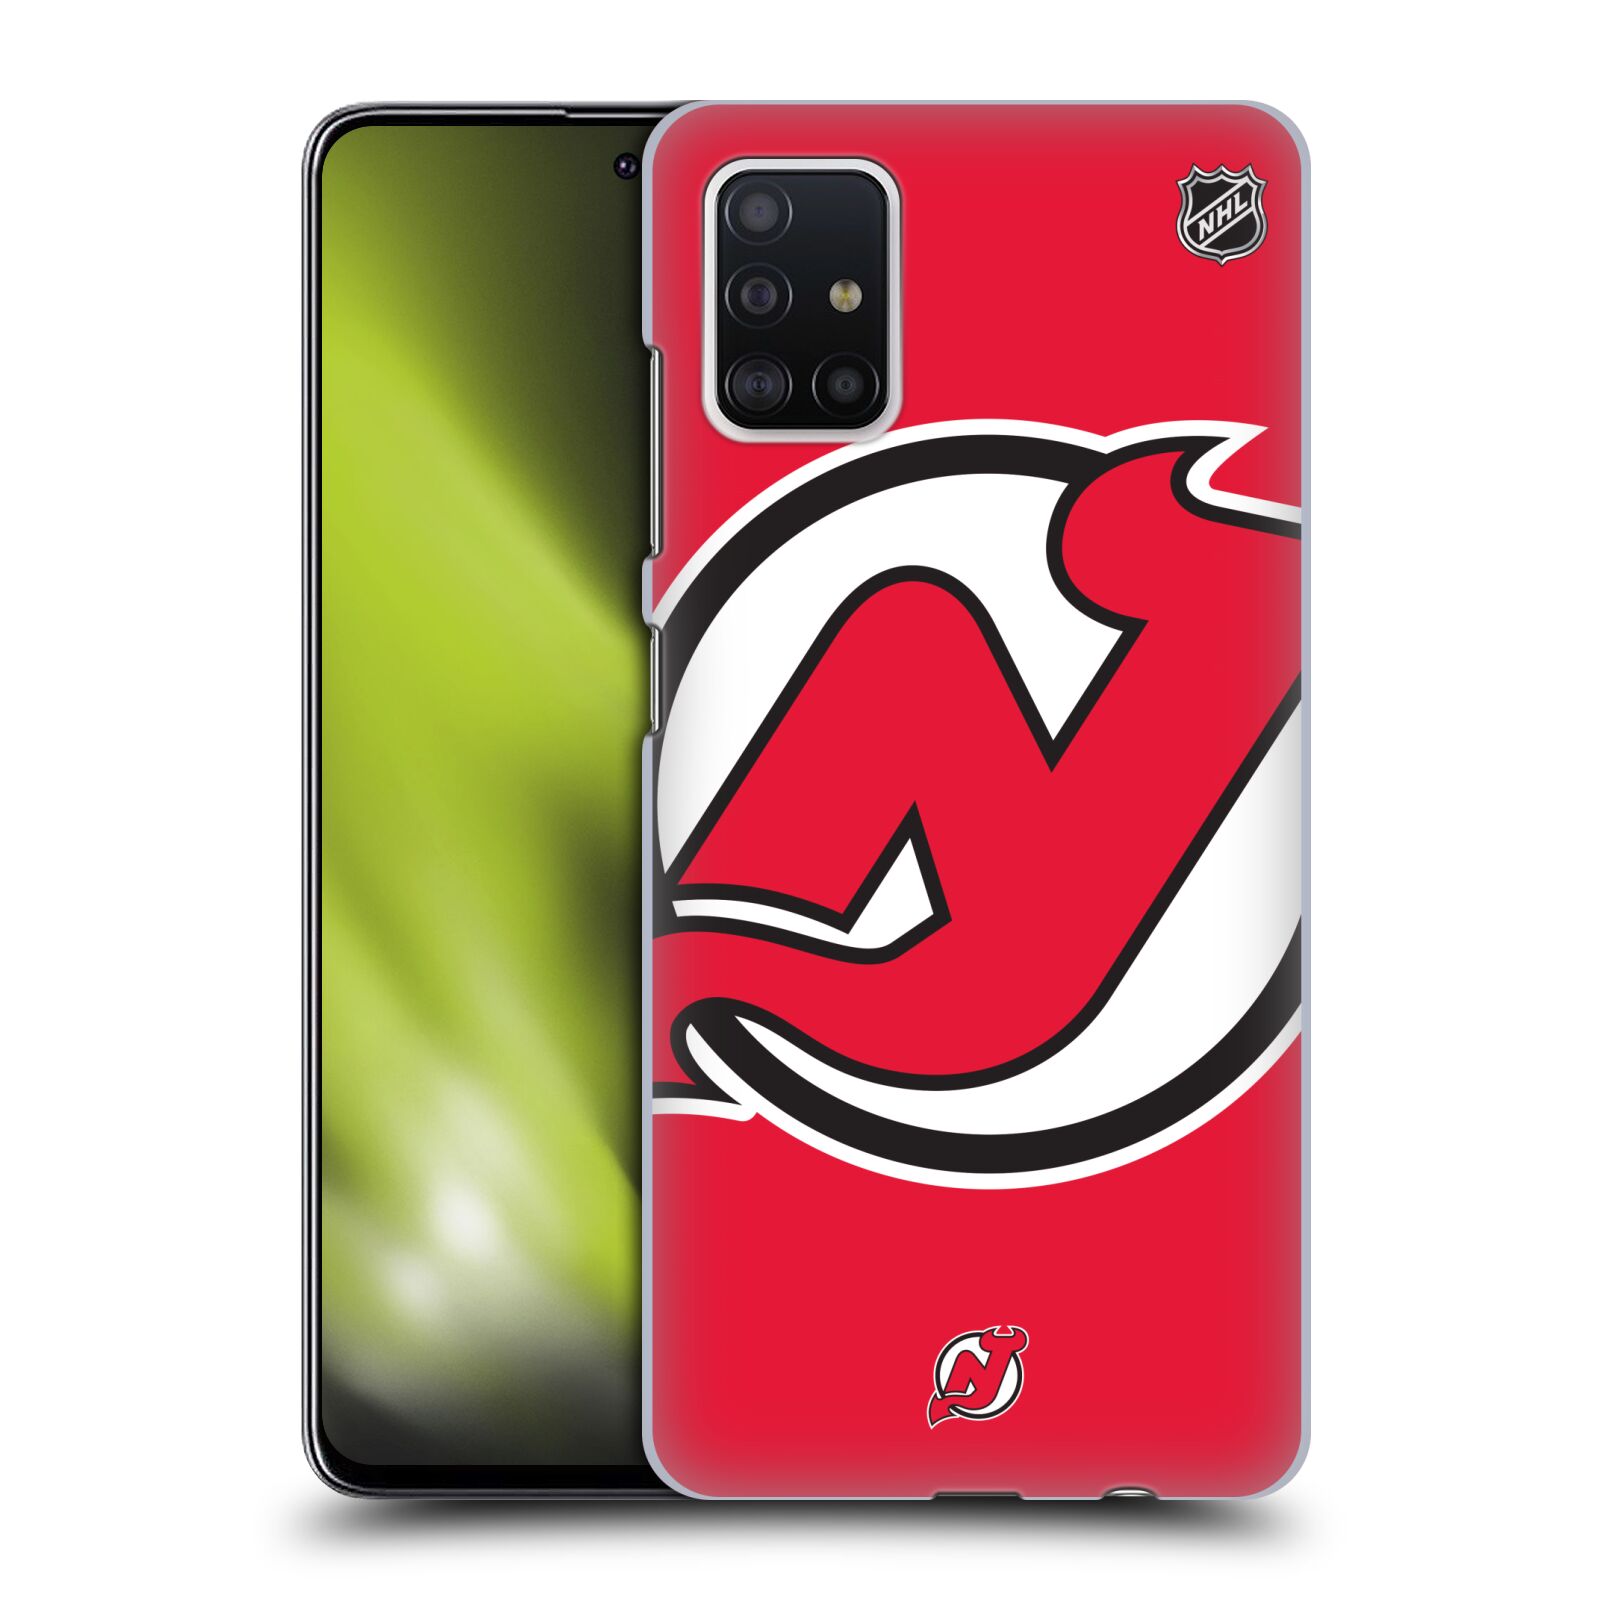 Pouzdro na mobil Samsung Galaxy A51 - HEAD CASE - Hokej NHL - New Jersey Devils - Velký znak